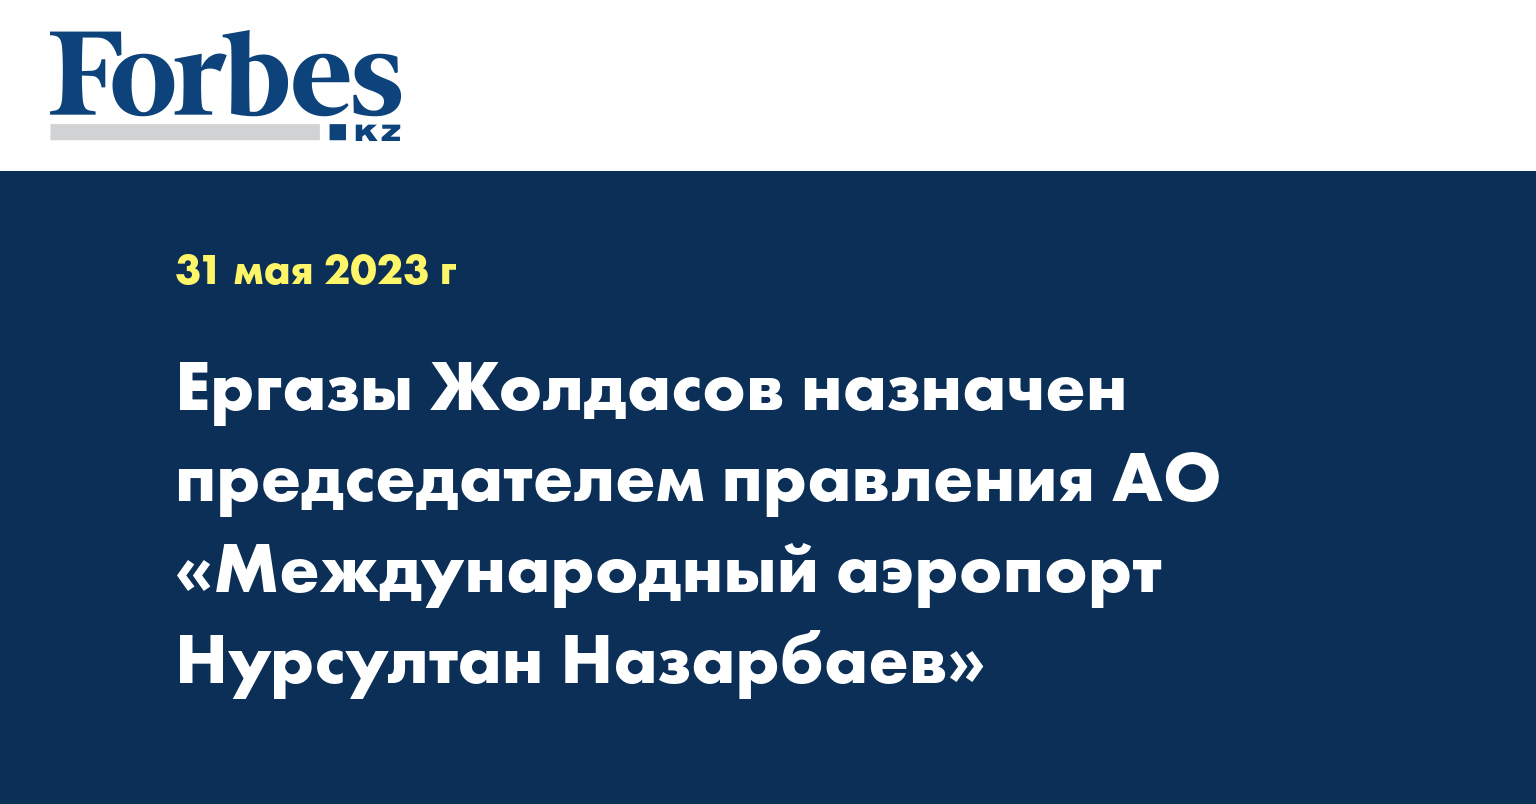 Ергазы Жолдасов назначен председателем правления АО «Международный аэропорт Нурсултан Назарбаев»